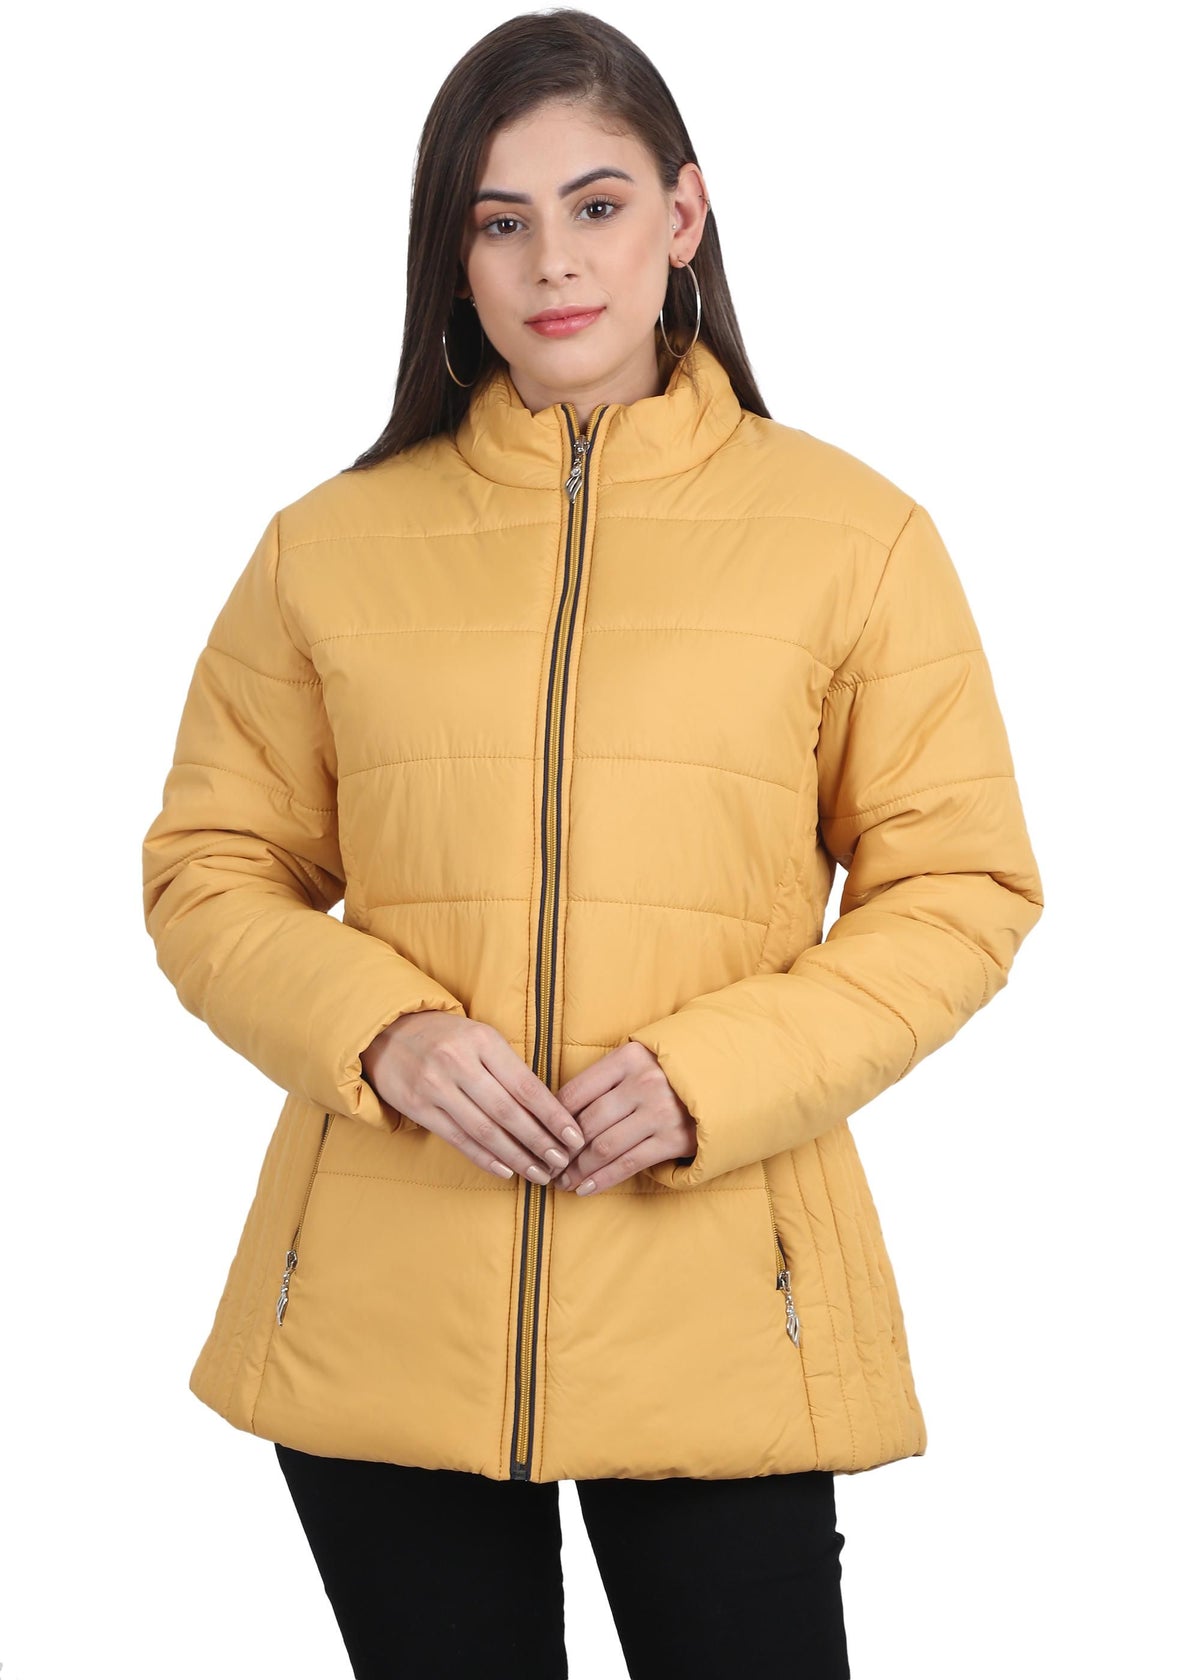 Xohy Women's Mustard Winter Wear Full Sleeve Solid Puffer Jacket